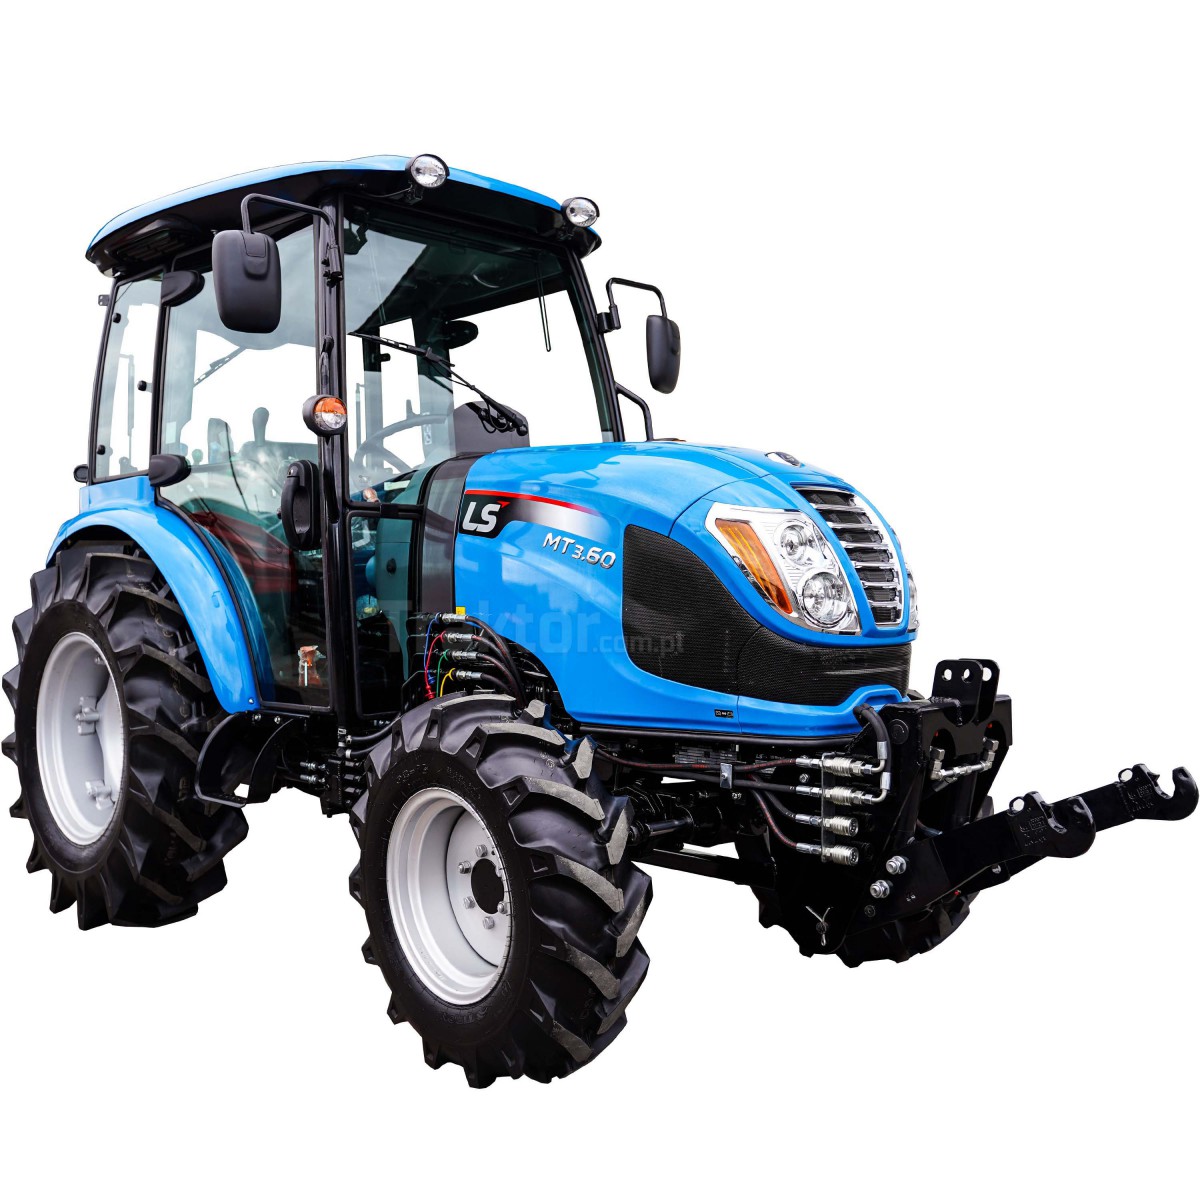 Traktor LS MT3.60 MEC 4x4 - 57 HP + přední tříbodový závěs Premium 4FARMER